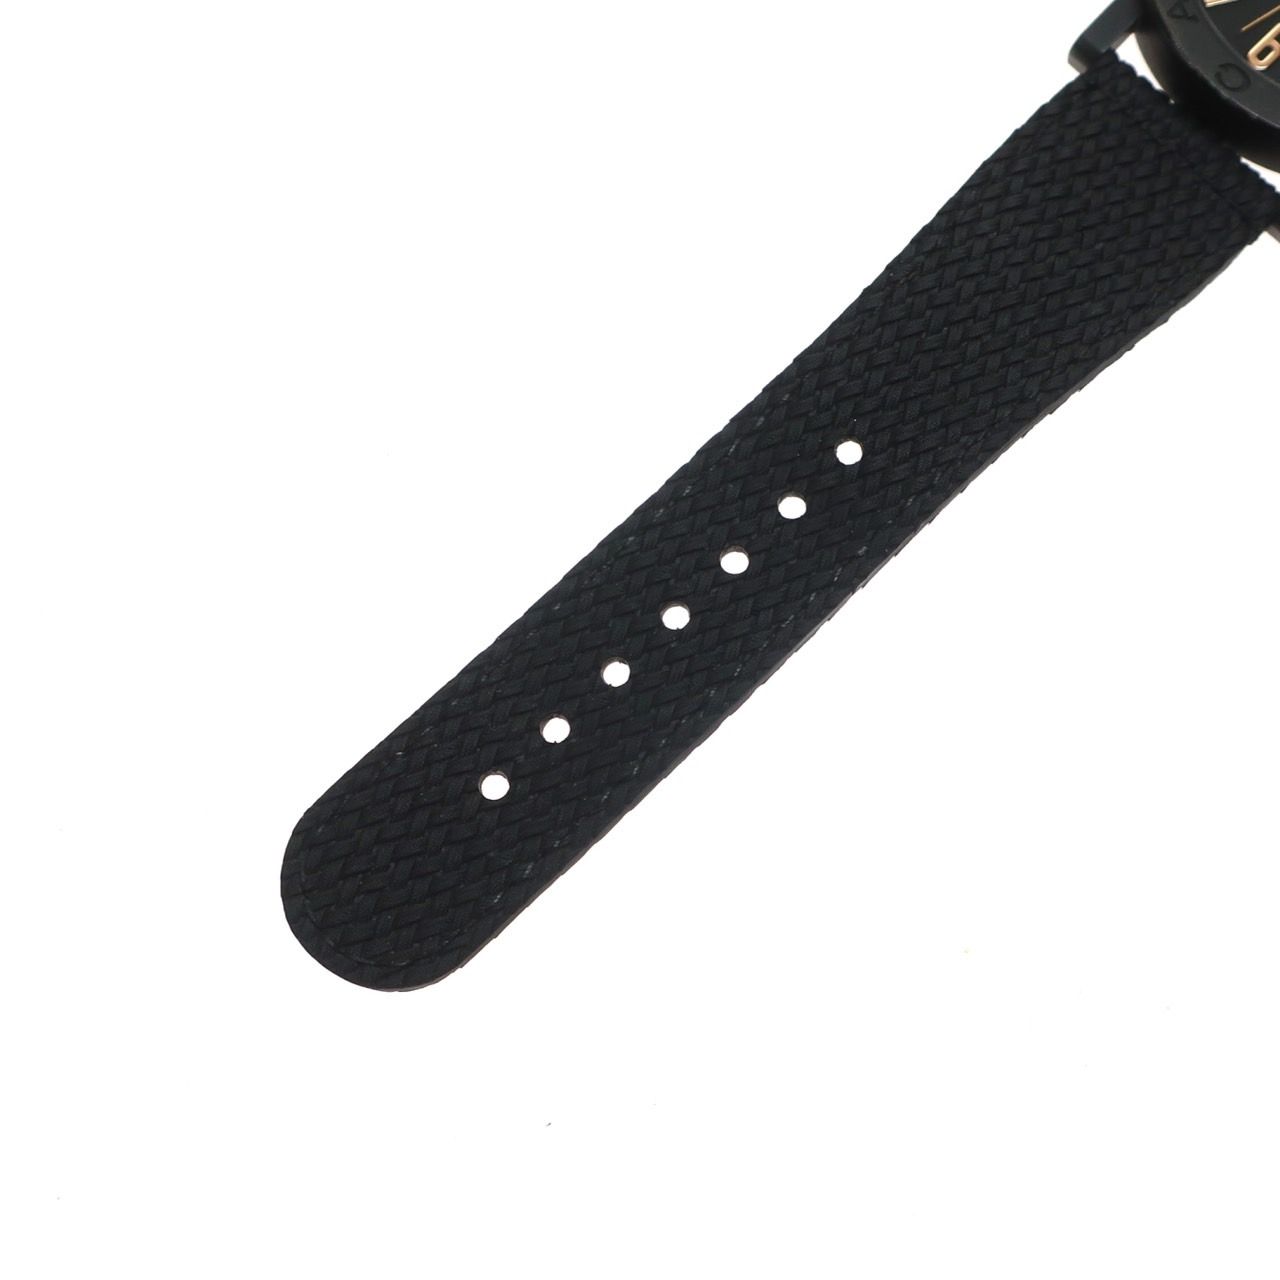 【極美品】BVLGARI ブルガリ ブルガリブルガリ ソロテンポ 102929 デイト ステンレススチール 自動巻き 黒 ブラック文字盤 メンズ 腕時計